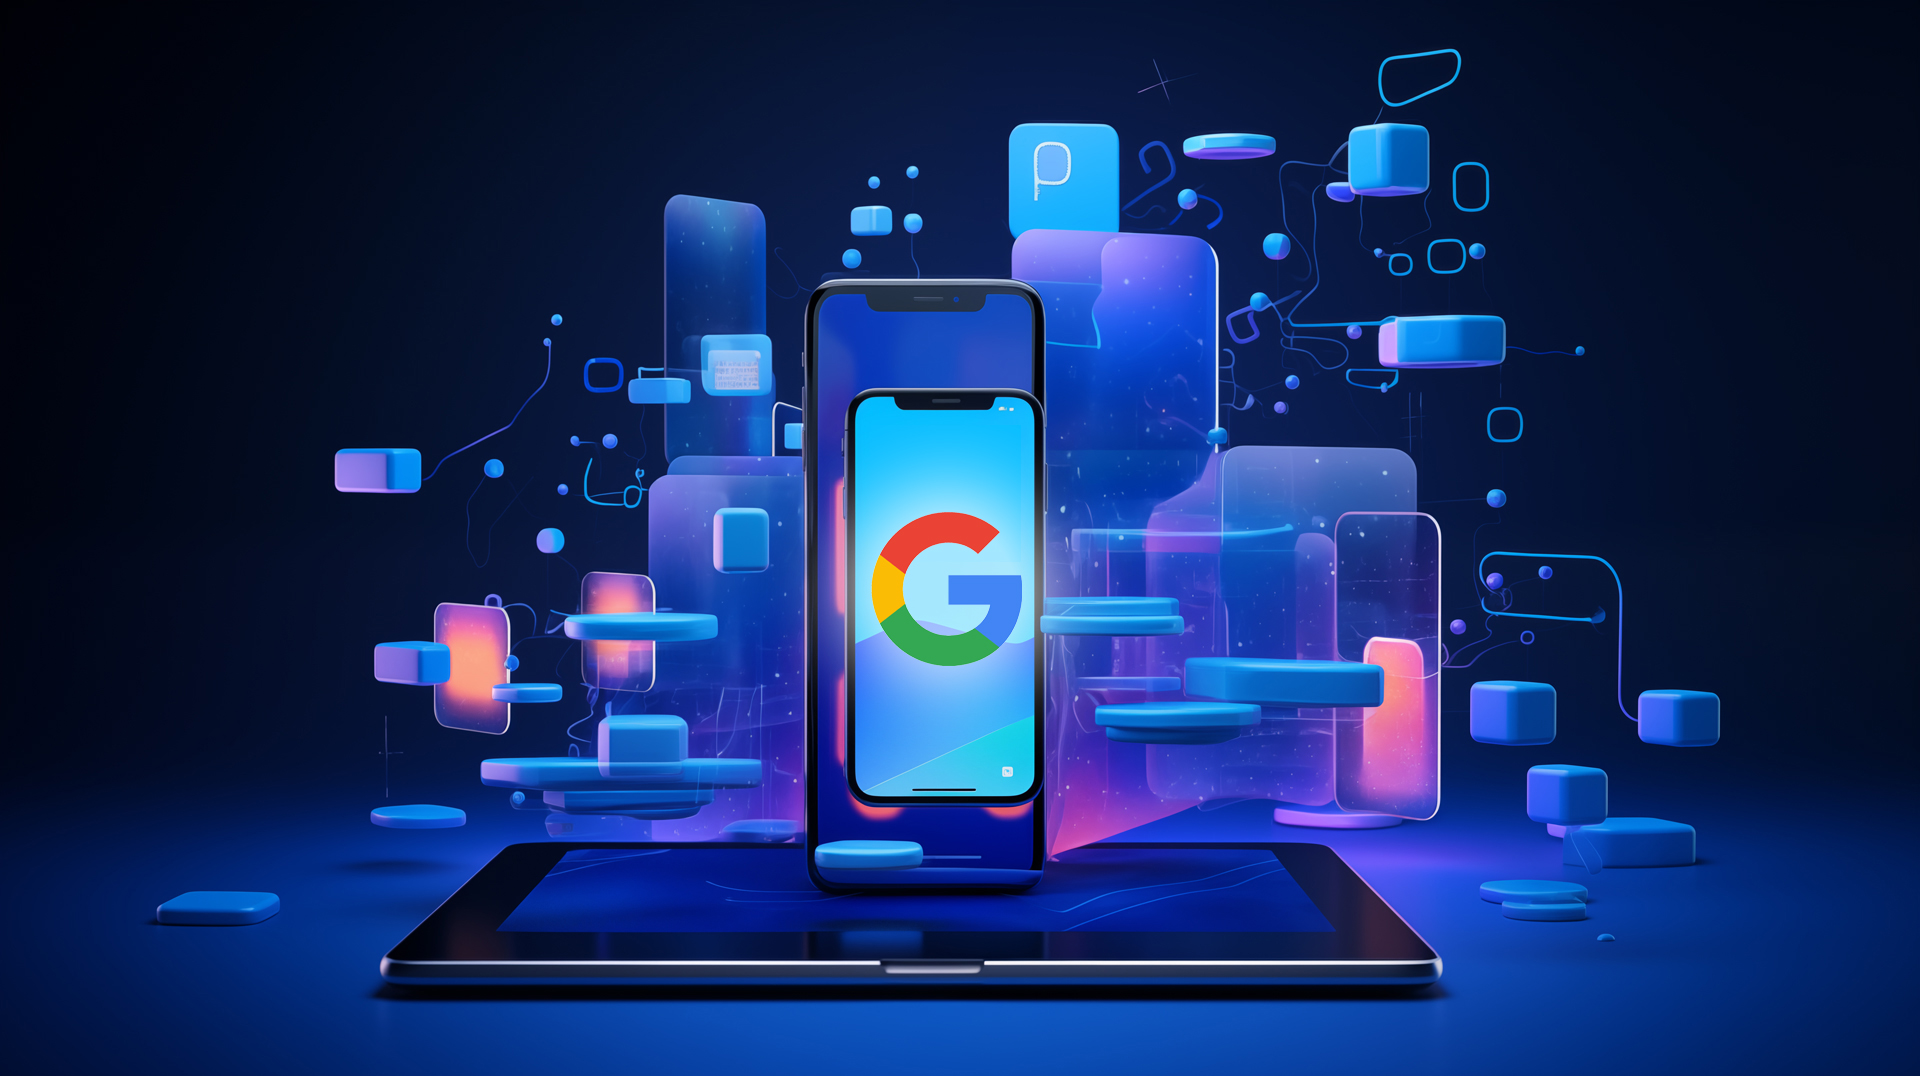 une tablette posé à plat avec deux smartphones debout l'un sur l'autre, celui en premier plan avec le logo de Google, sur un fond noir avec une lumière bleu et des formes en 3D en fond